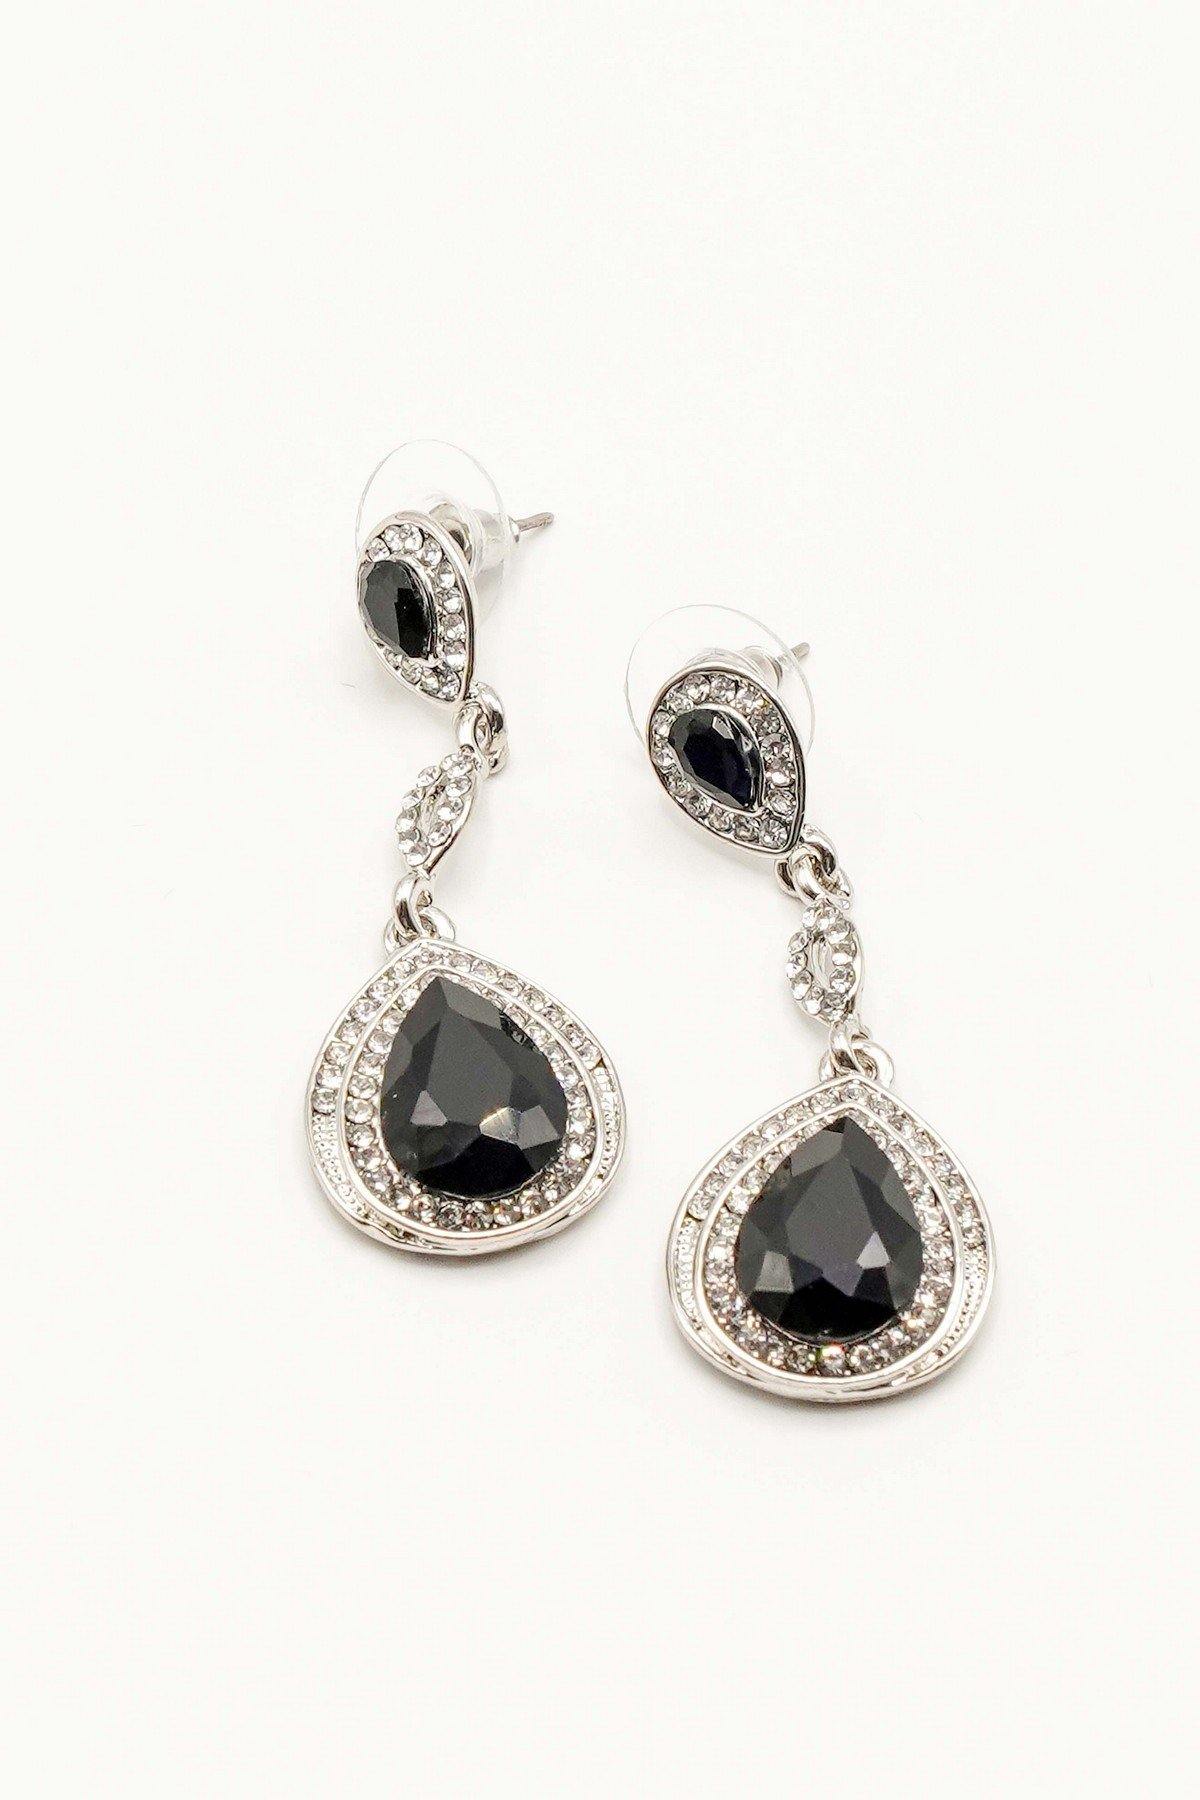 Dangle Clear Diamante Teardrop Rhinestone Earrings - The Dress Outlet